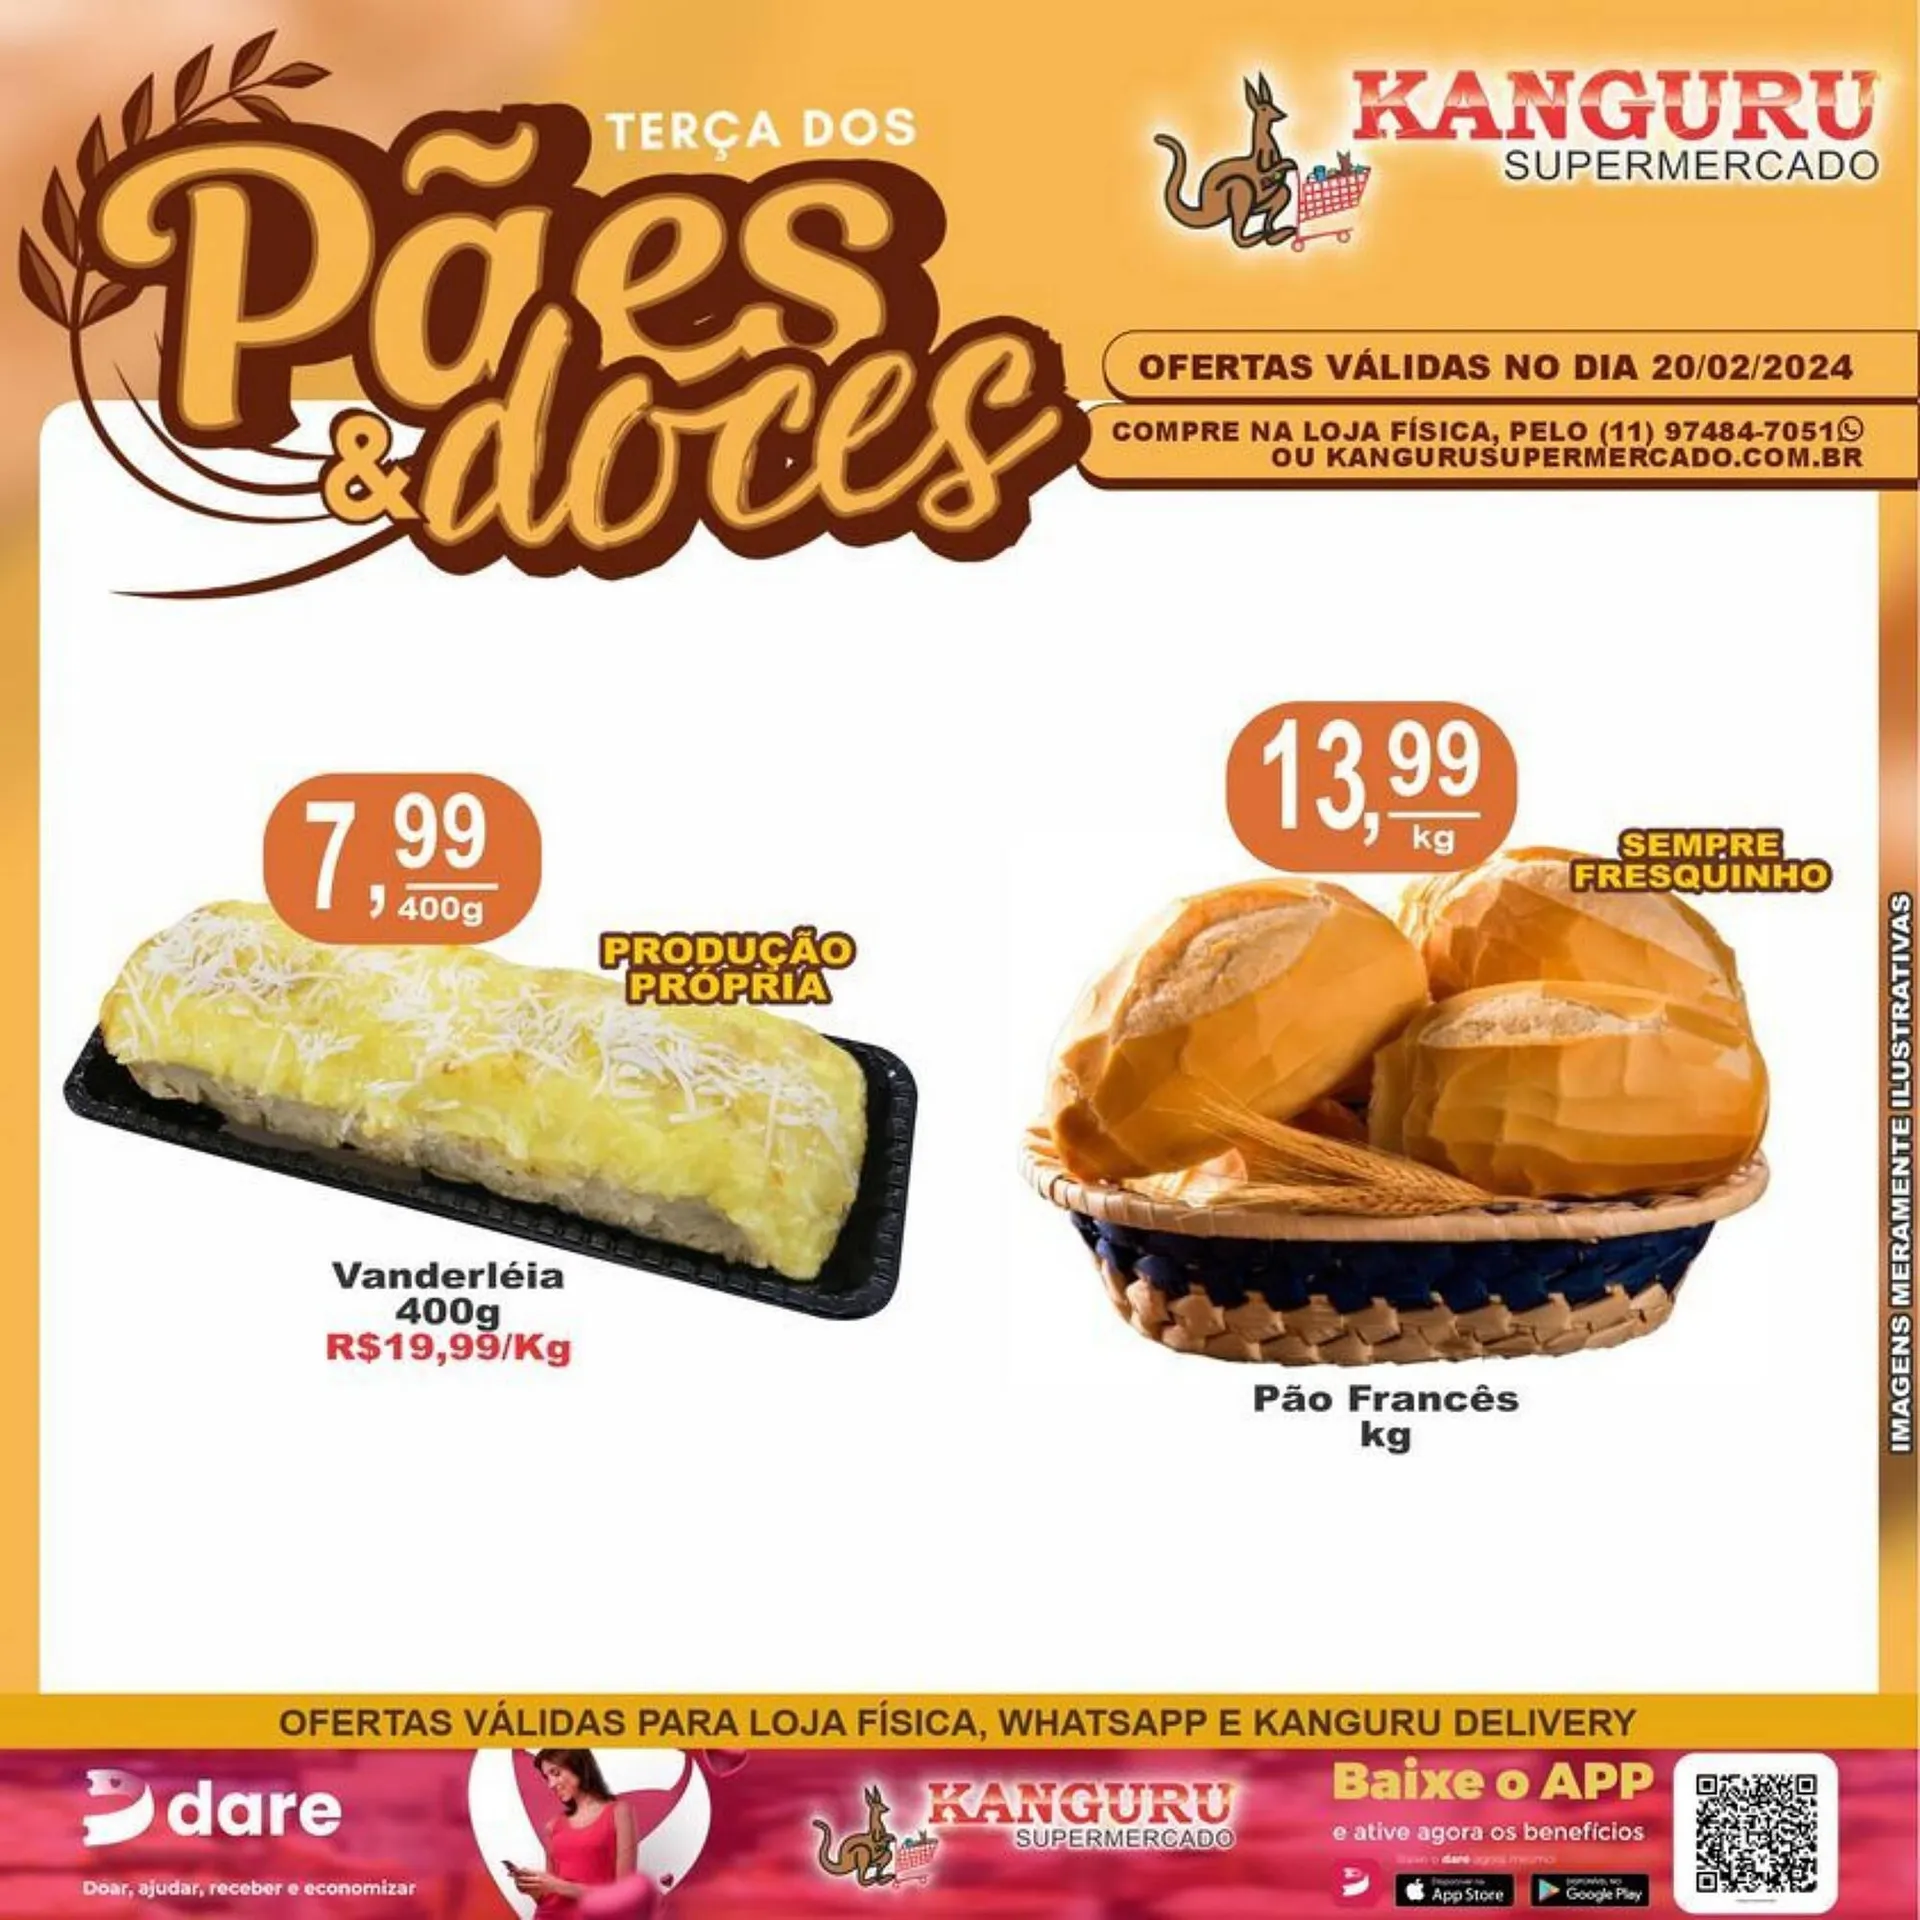 Encarte de Catálogo Kanguru Supermercado 20 de fevereiro até 22 de fevereiro 2024 - Pagina 